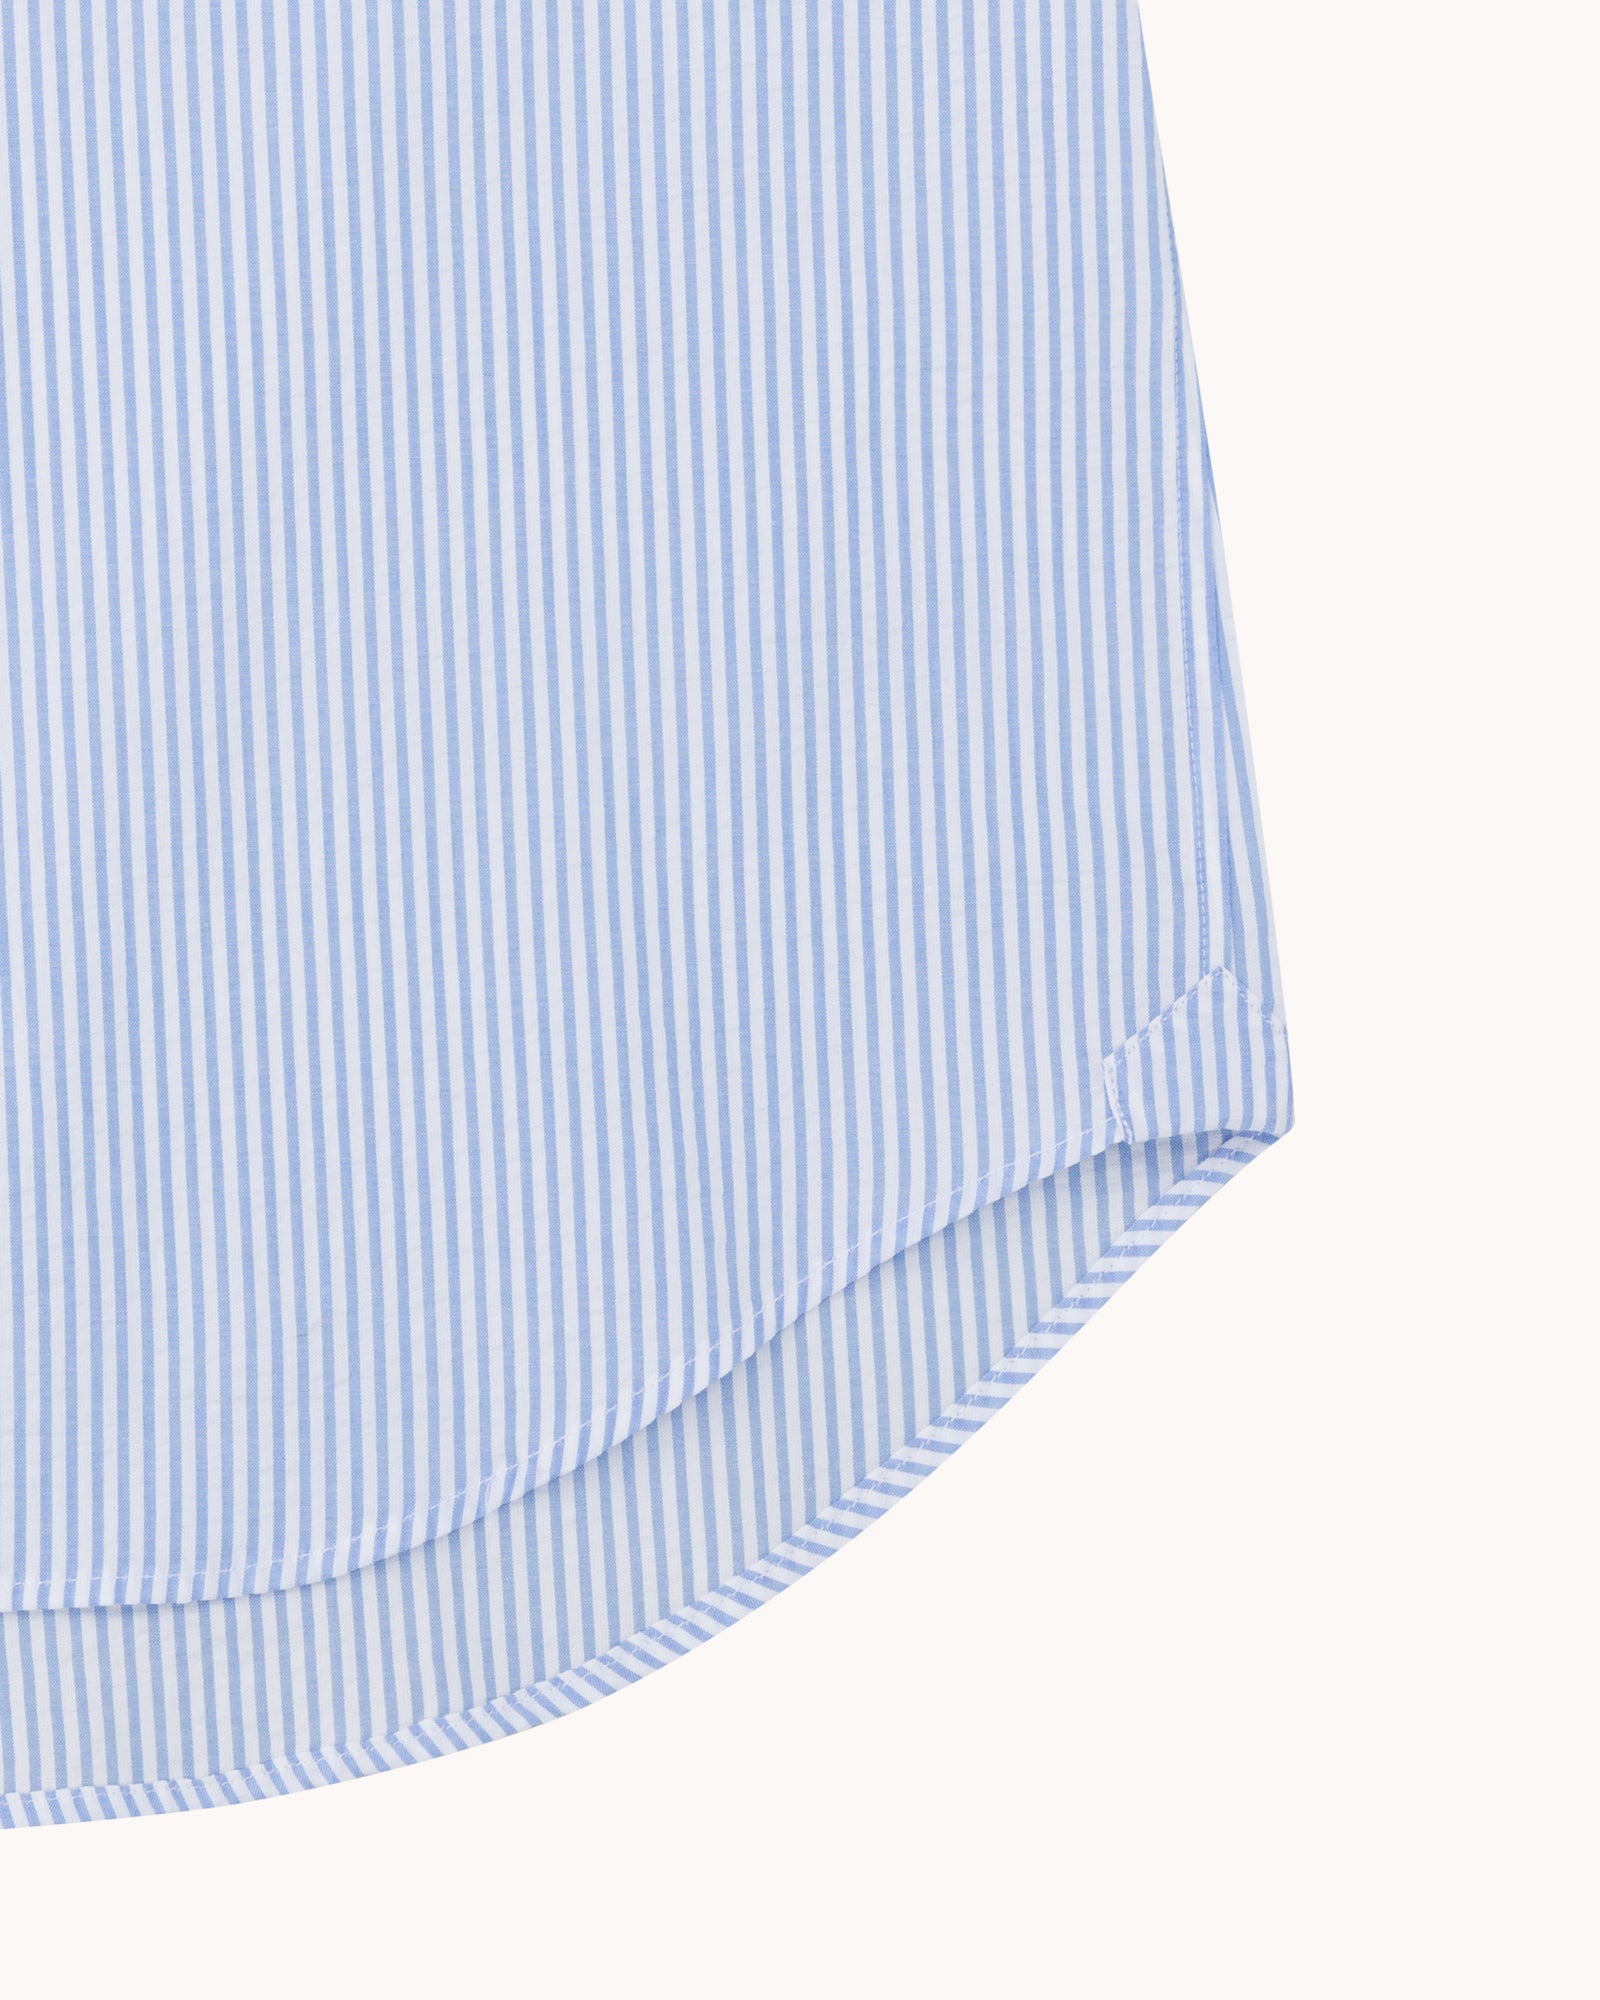 Button Down Collar Shirt - Blue Stripe Cotton Seersucker